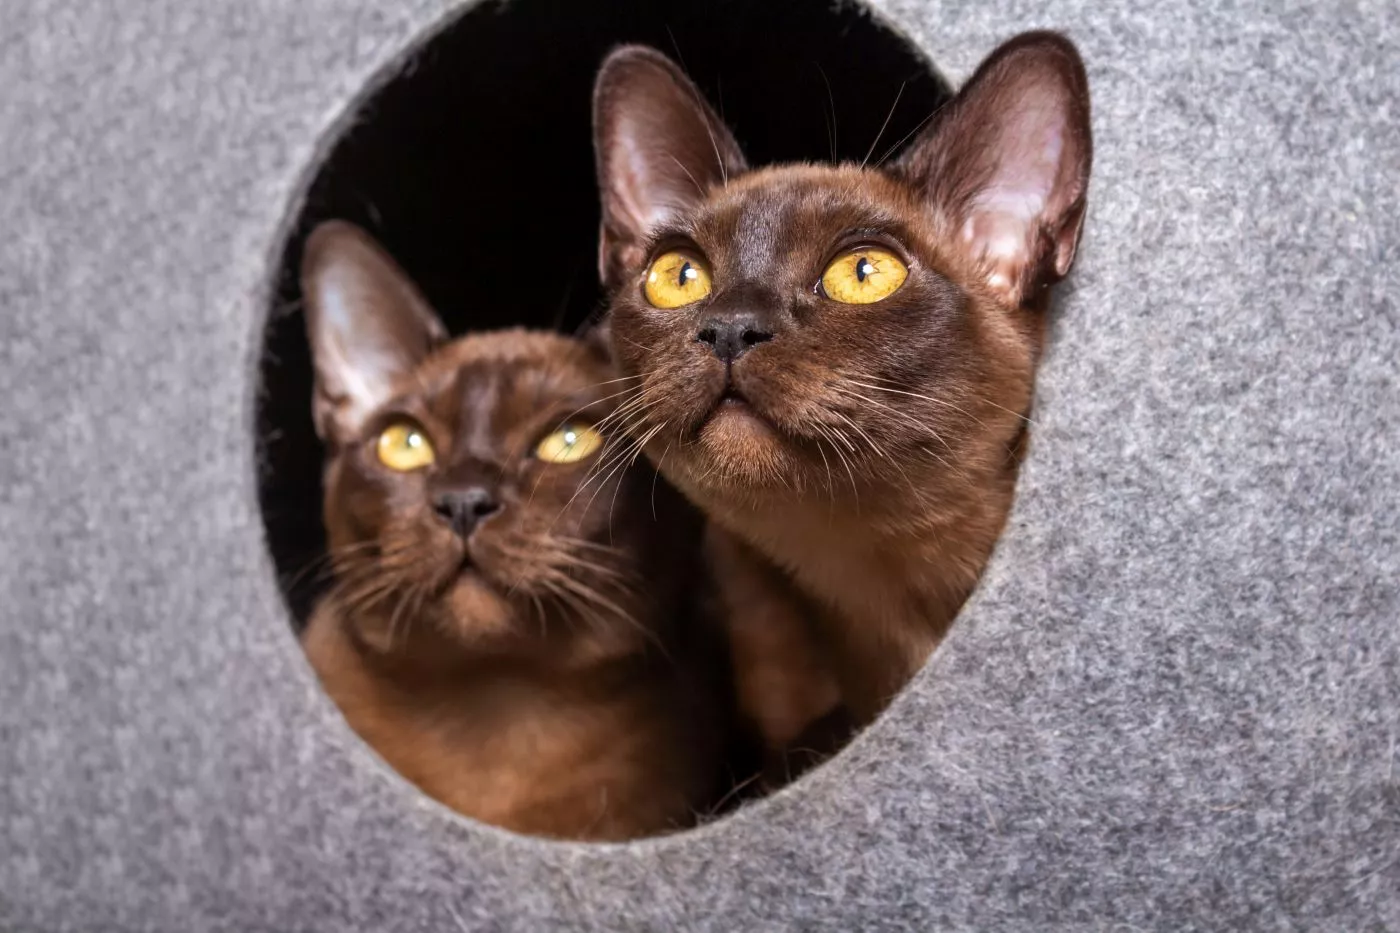 Dva burmanska mačića sjede u skrivalici i gledaju van nje